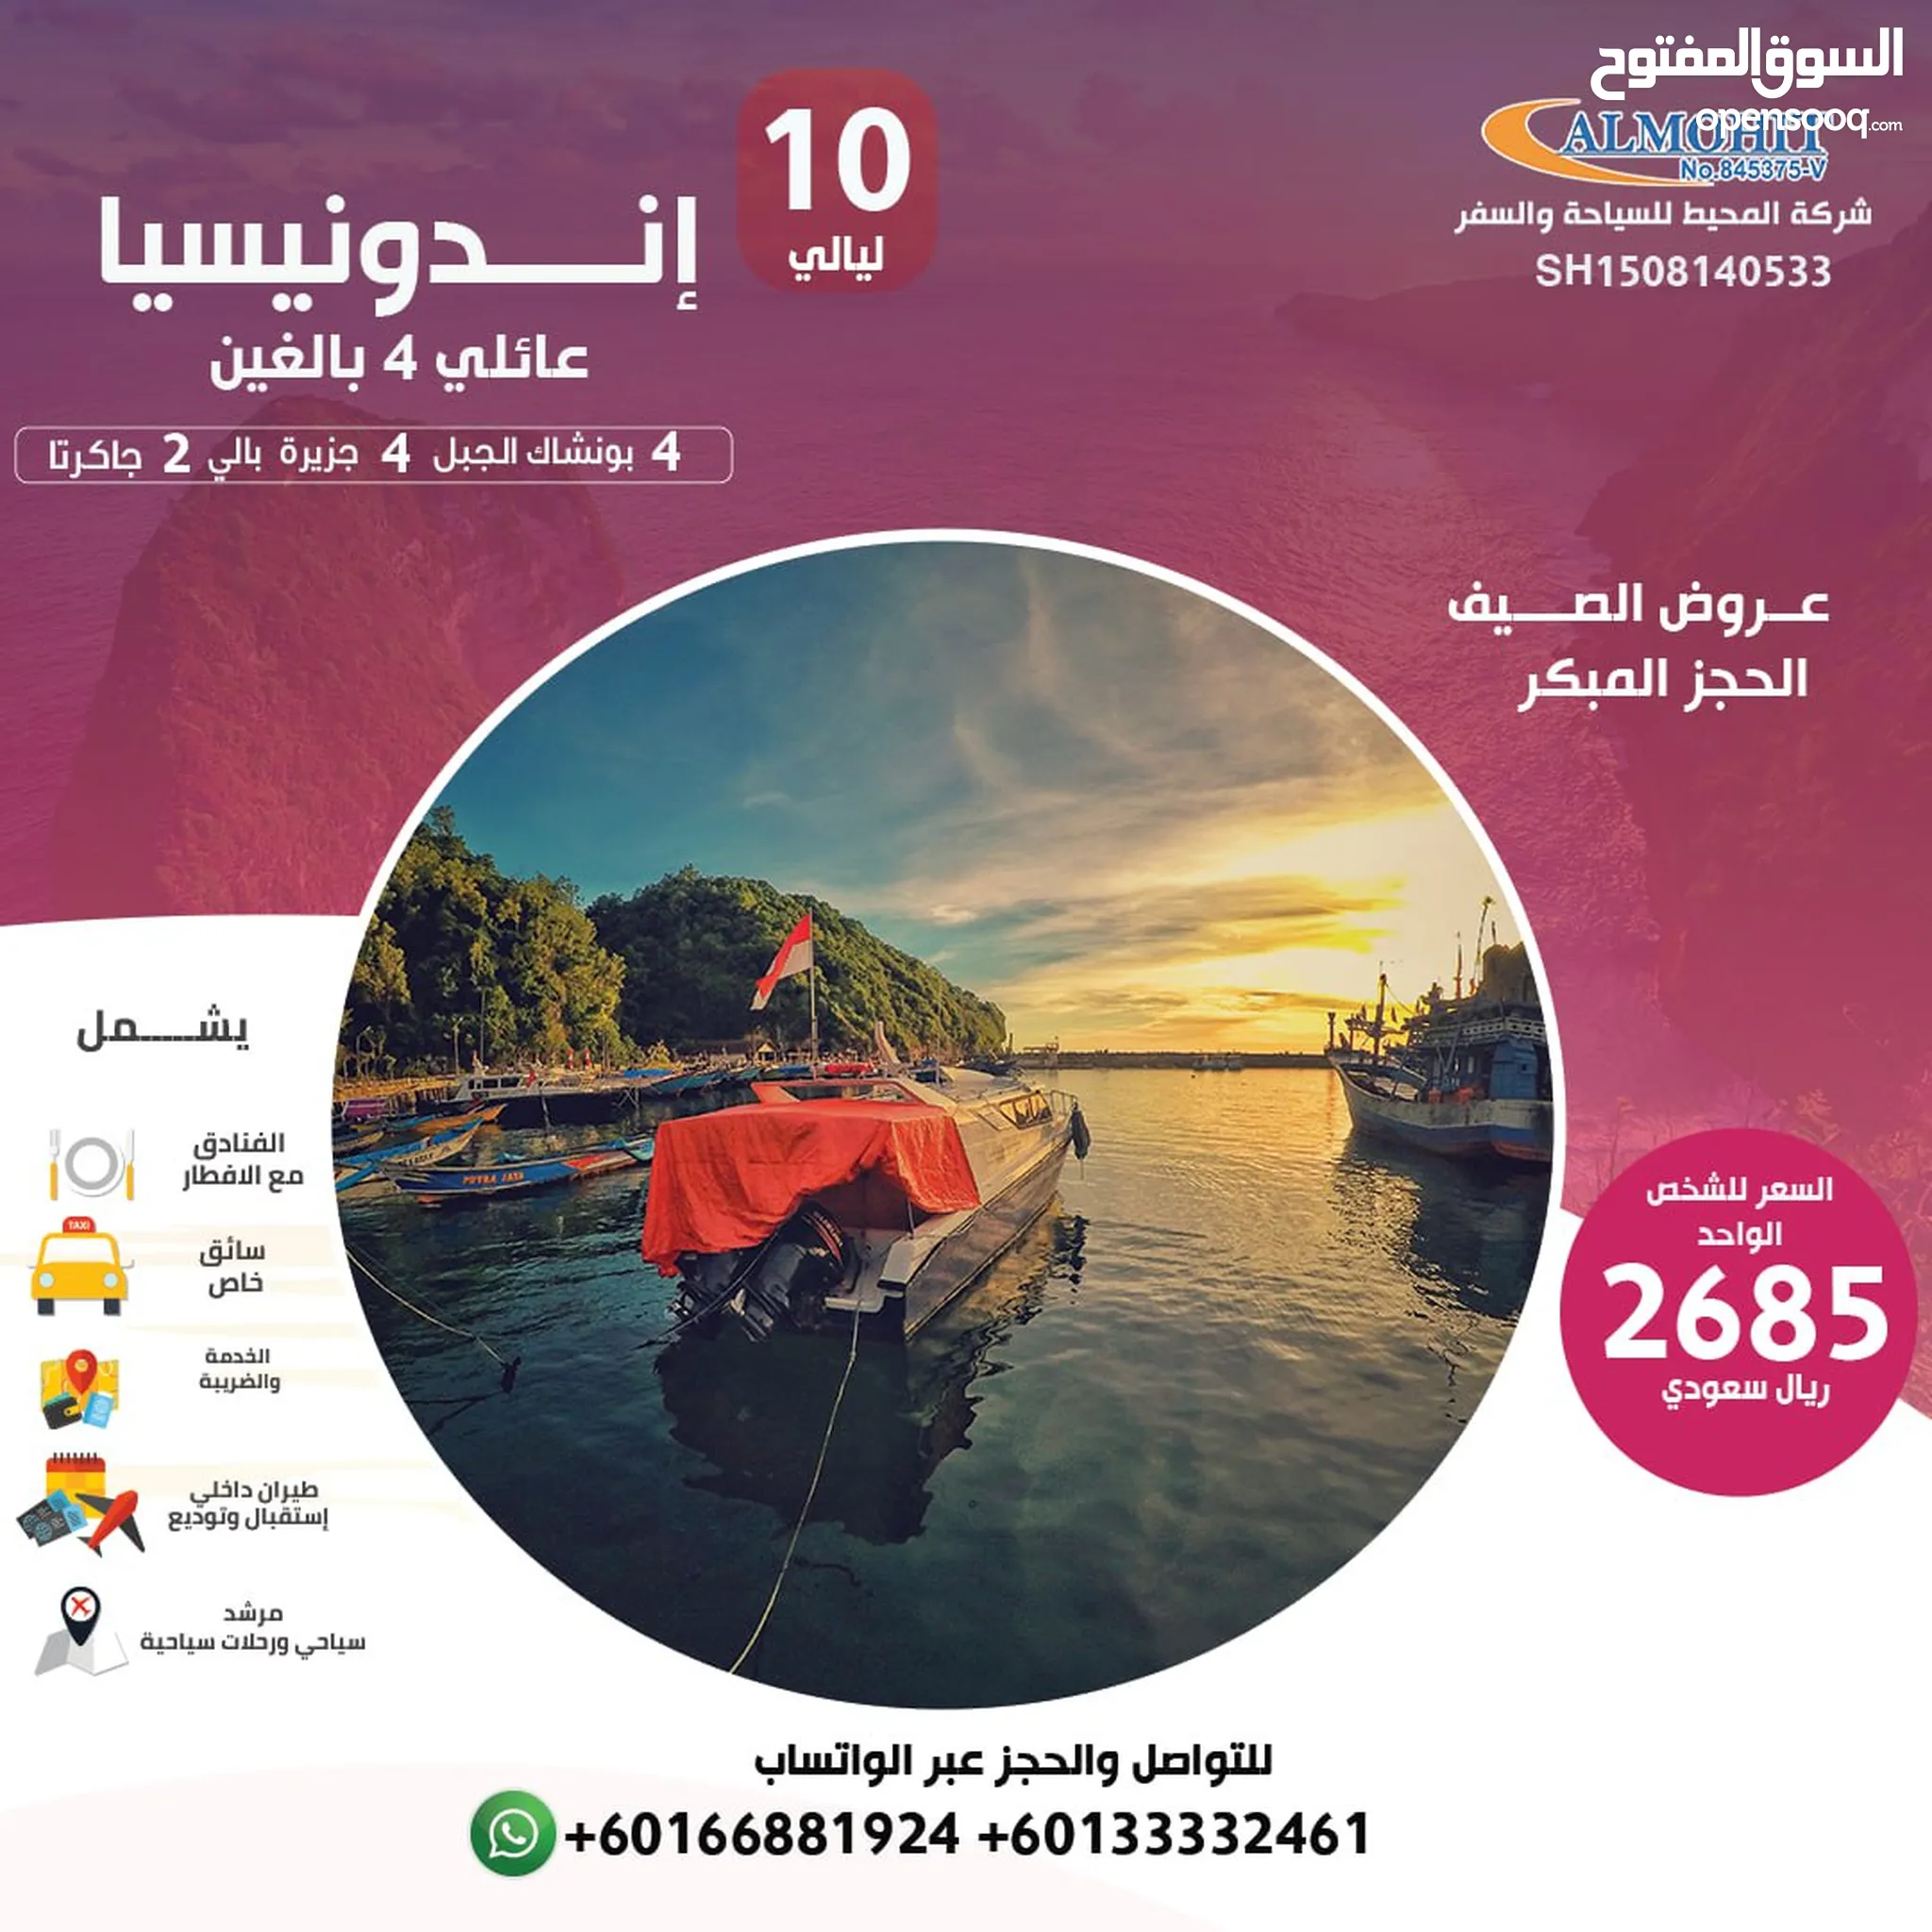 خدمات سياحة وسفر : مكاتب سياحية : حجز تذاكر : ارخص الاسعار في البحرين |  السوق المفتوح